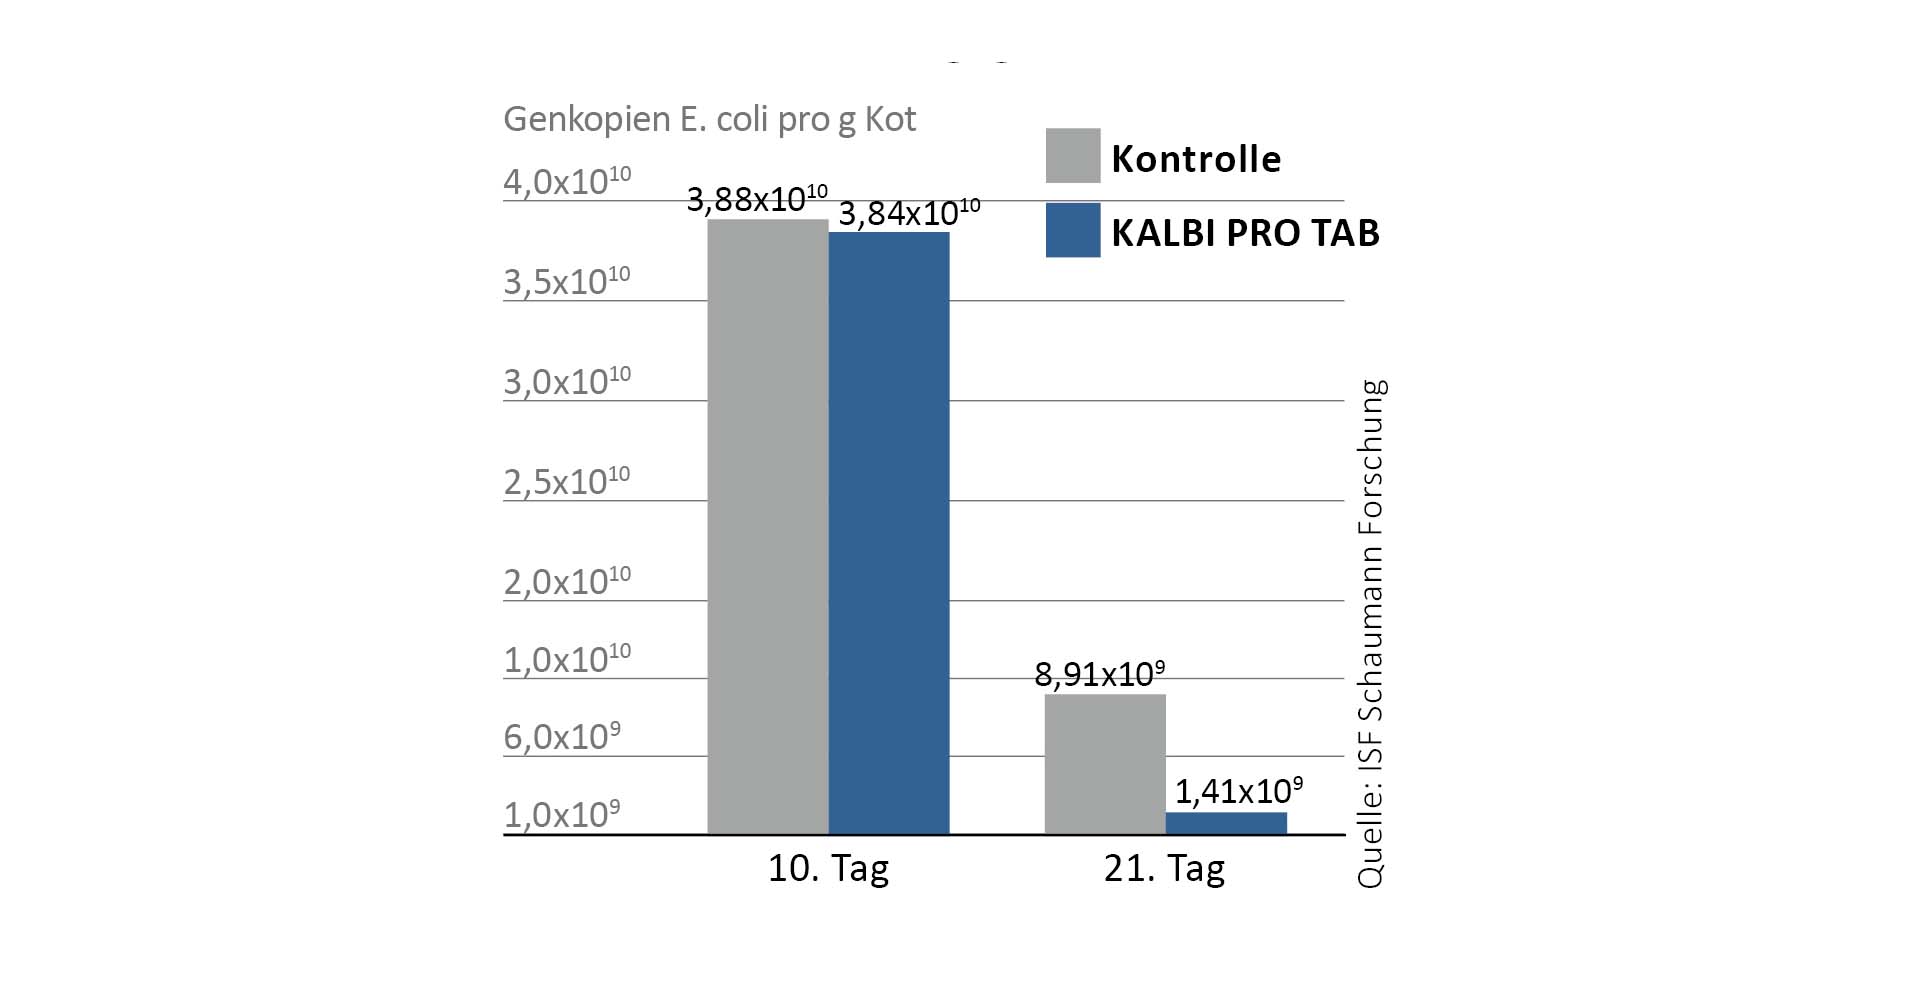 Die Milchsäurebakterien in KALBI PRO TAB reduzieren die Entwicklung und Vermehrung von pathogenen Erregern